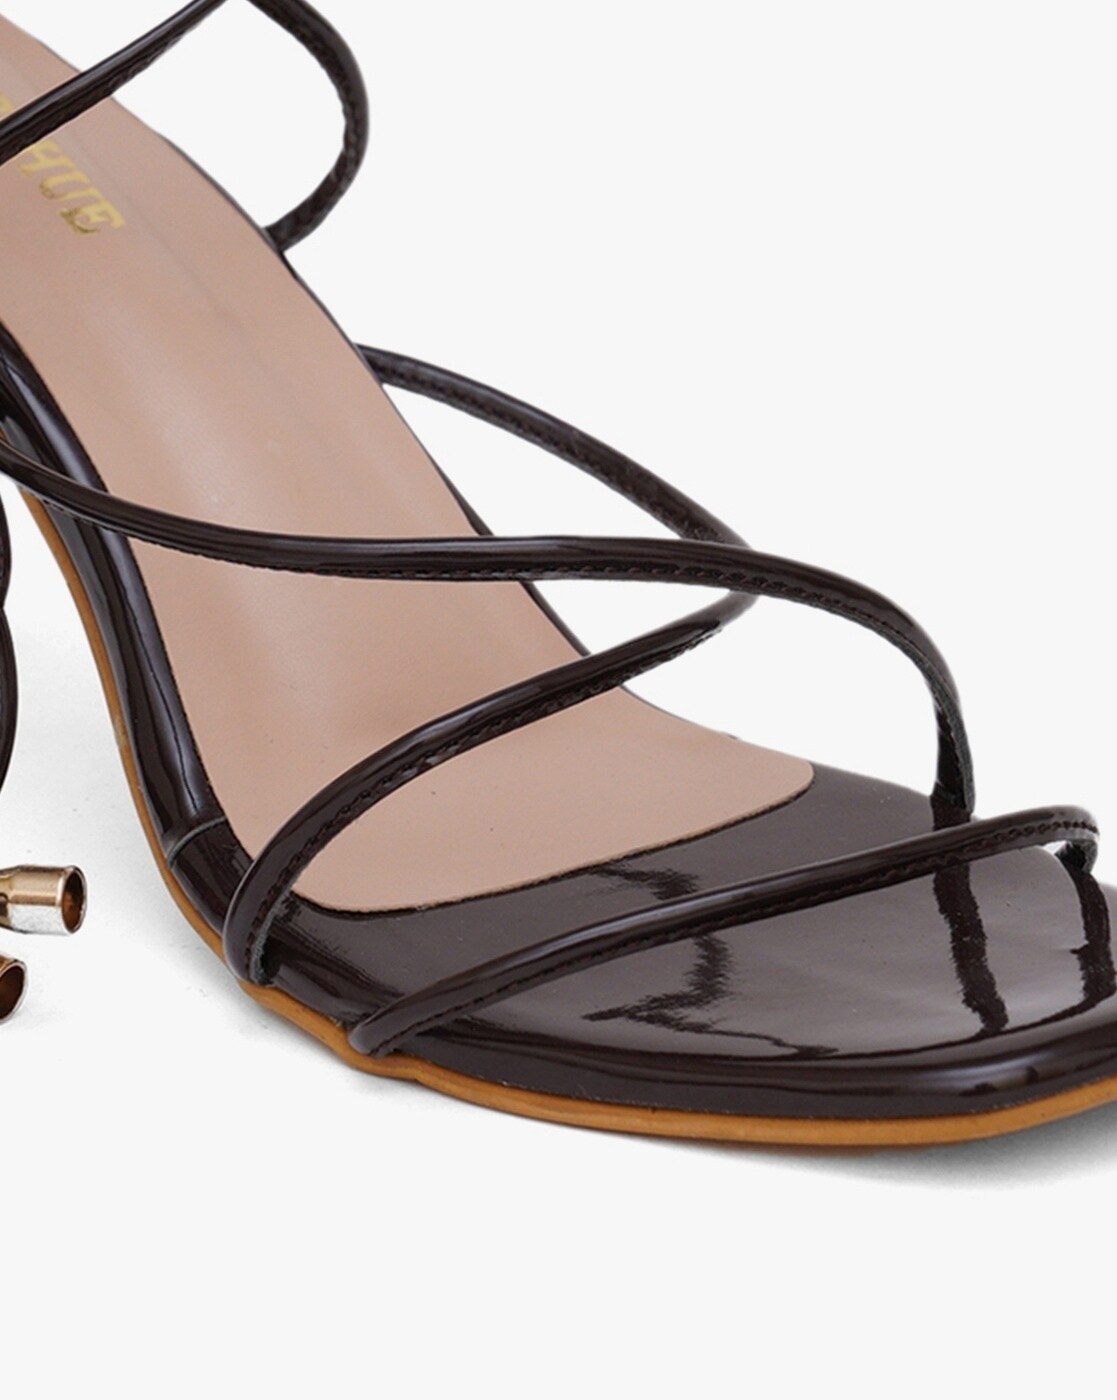 Elegant Ankle Strap Sandals For Women, Mesh Brown Stiletto Heeled Sandals |  SHEIN